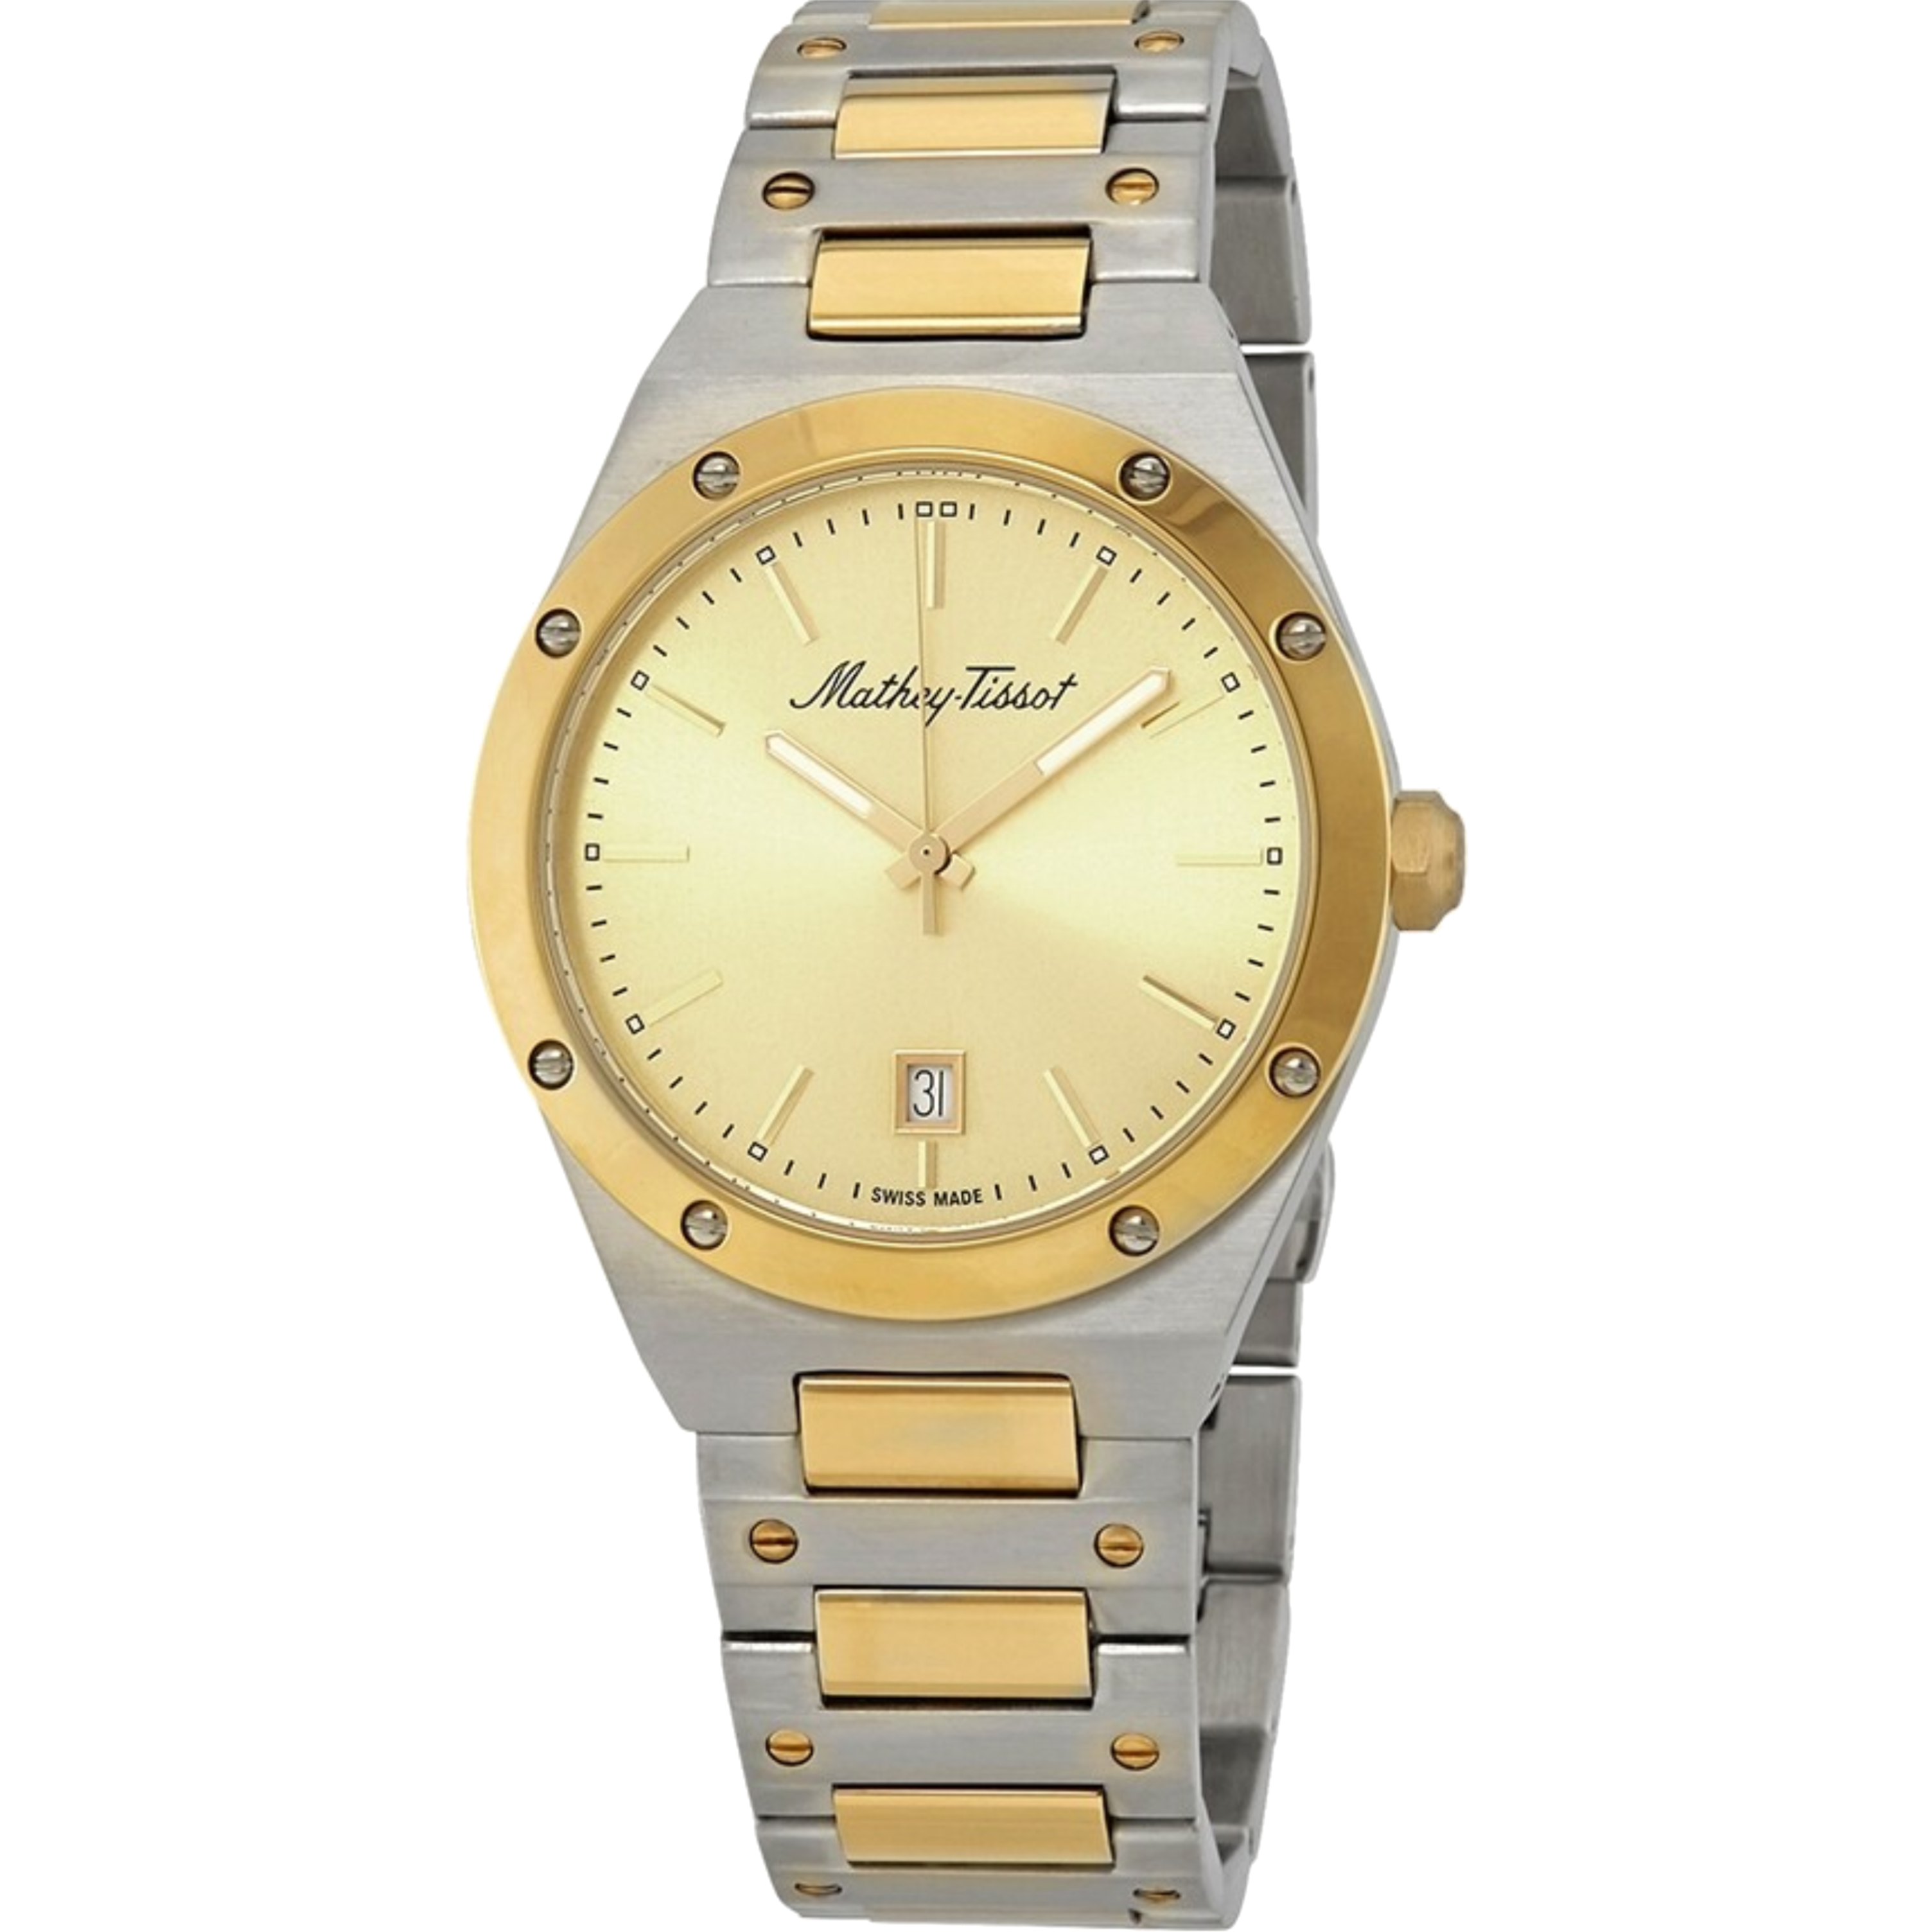 שעון יד לגבר Mathey Tissot H680BDI 41mm צבע כסף/זהב/זכוכית ספיר - אחריות לשנה ע"י היבואן